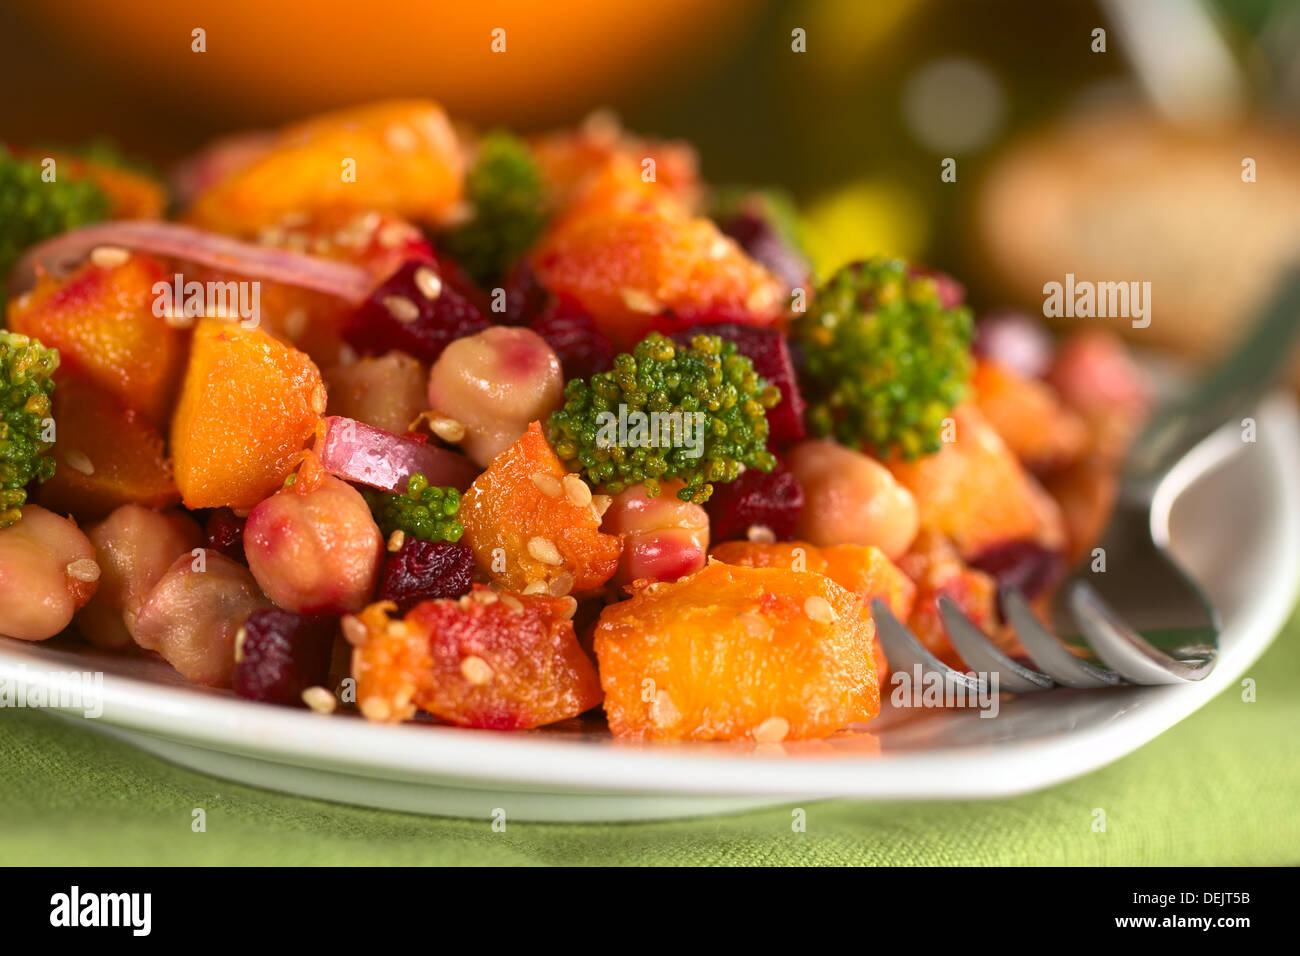 La zucca, barbabietole, broccoli e insalata di ceci guarnito con semi di sesamo Foto Stock